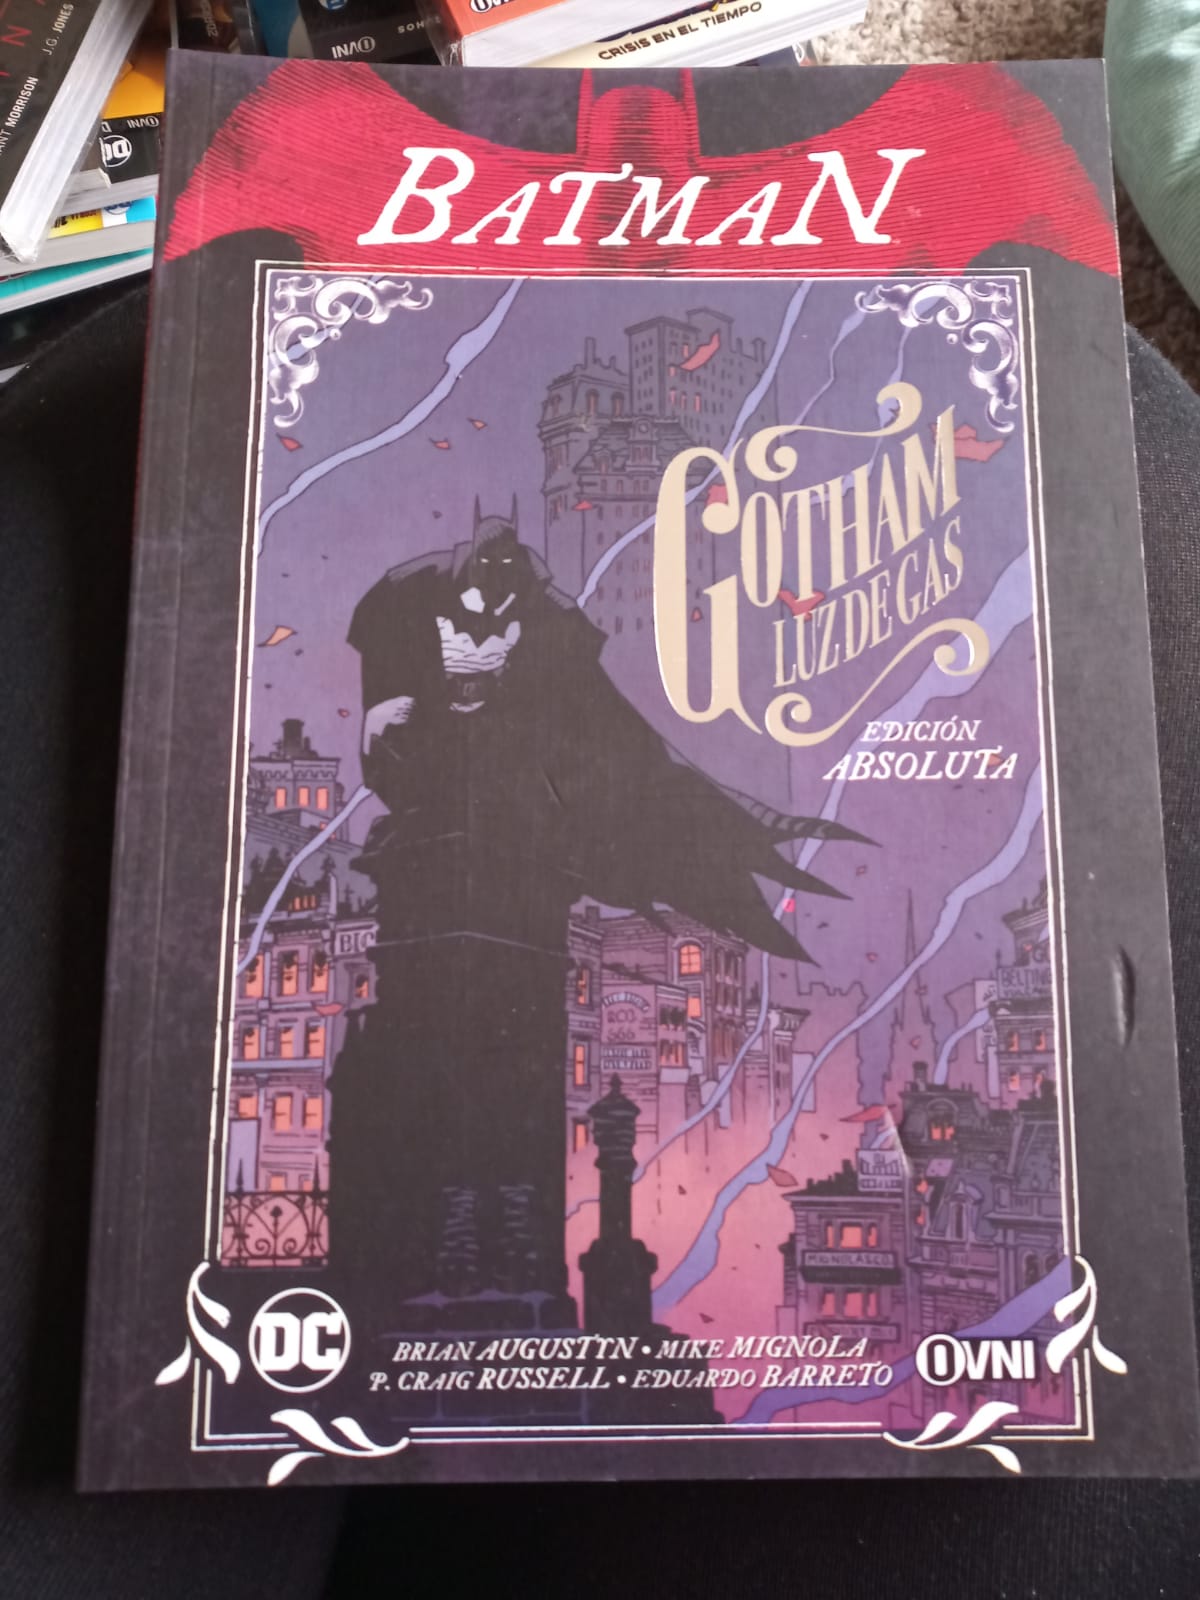 Gotham Luz de Gas Edición Absoluta – Zienke Comics